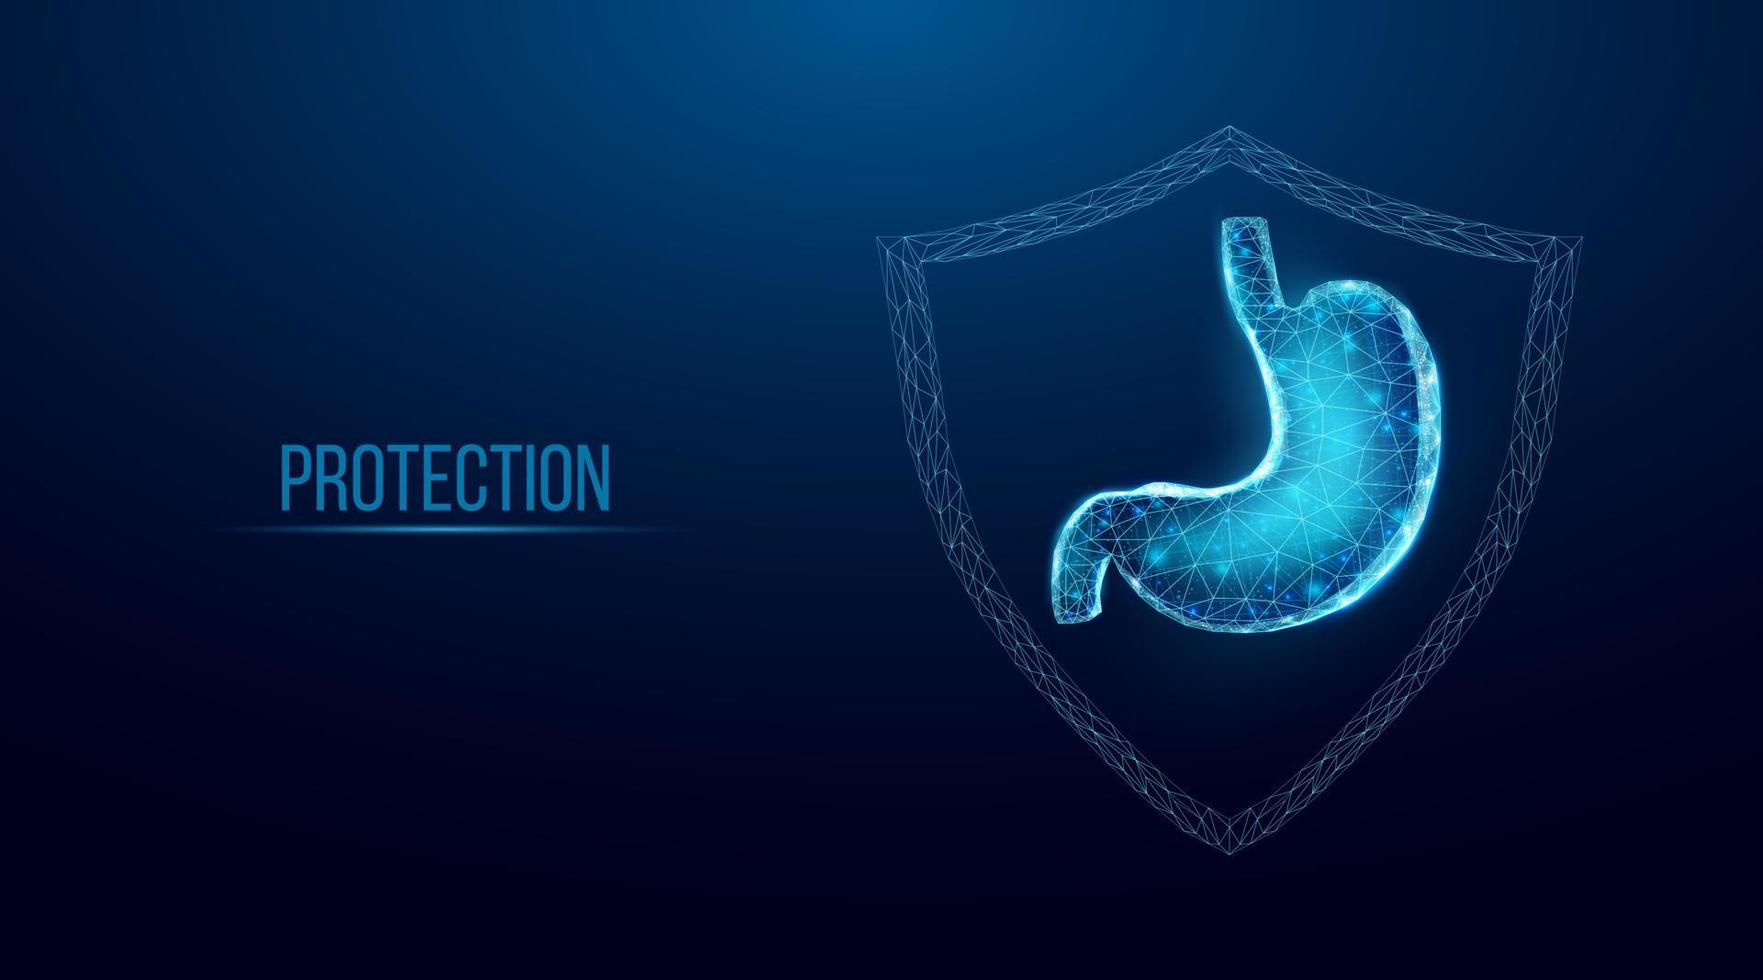 proteção do estômago humano. estilo de baixo poli de wireframe. conceito para tratamento médico, farmacológico do sistema digestivo. ilustração em vetor 3d moderno abstrato em fundo azul escuro.